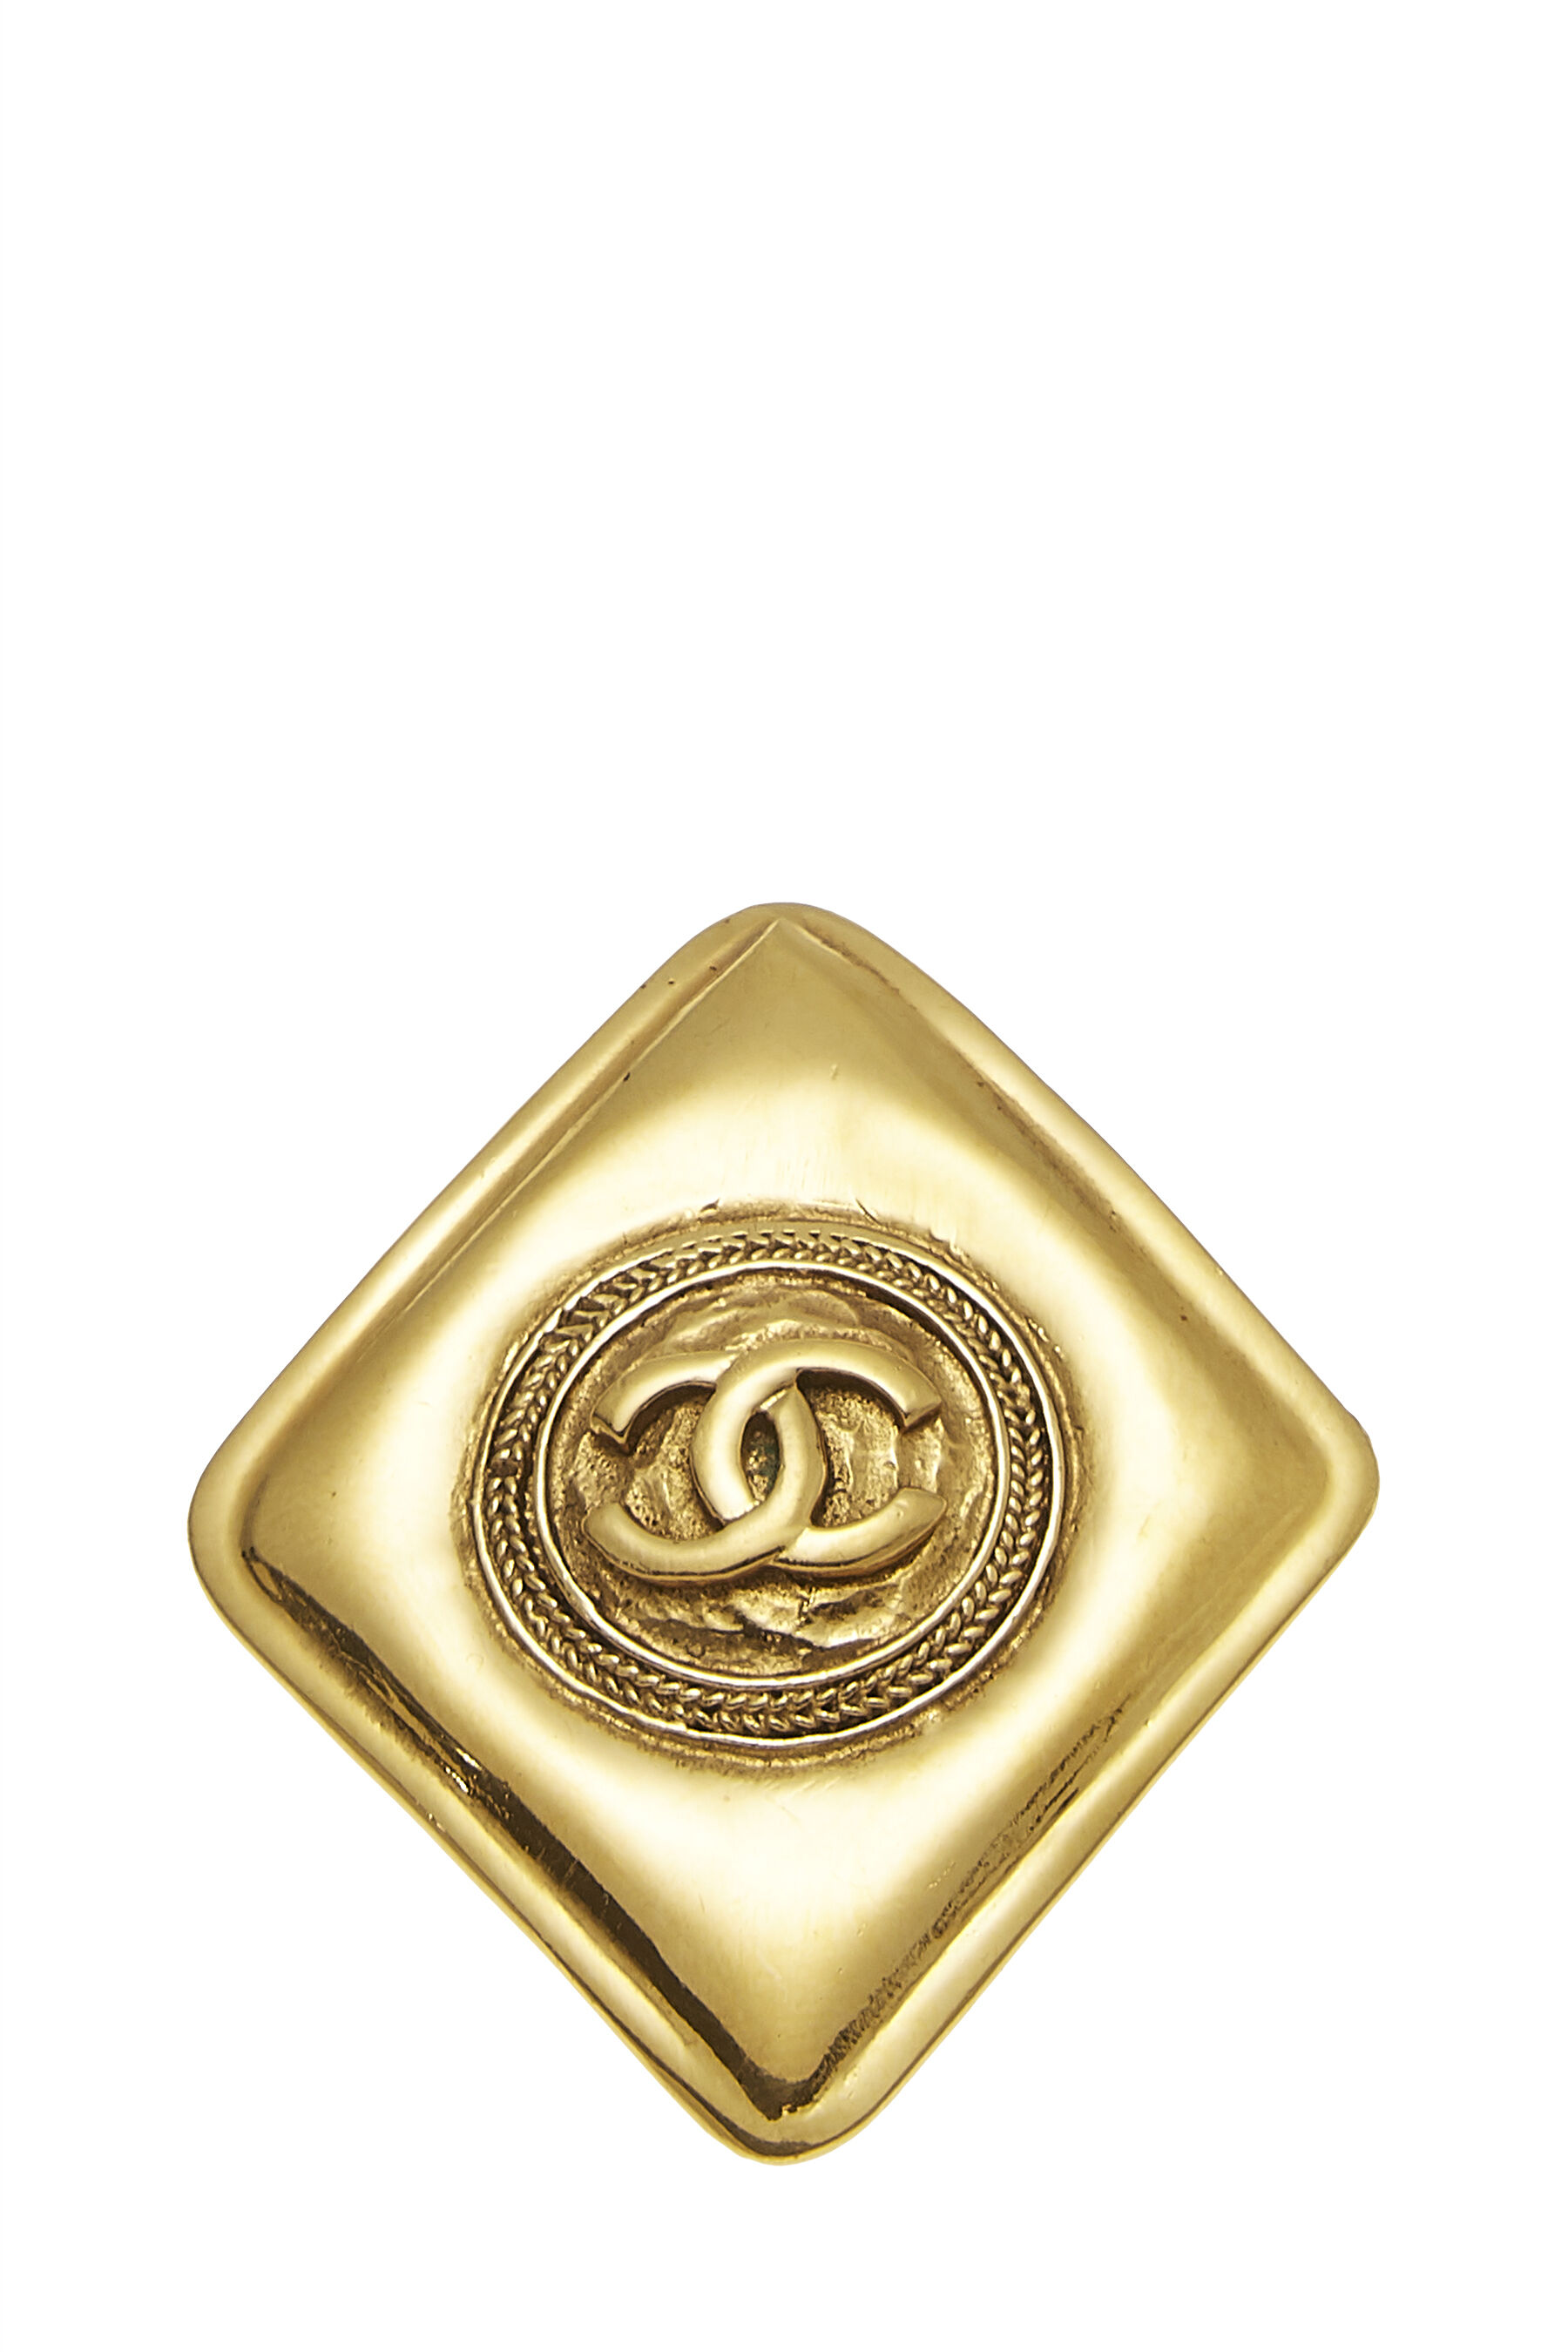 Chanel Gold Round Paris Keychain Q6A28J17DB002